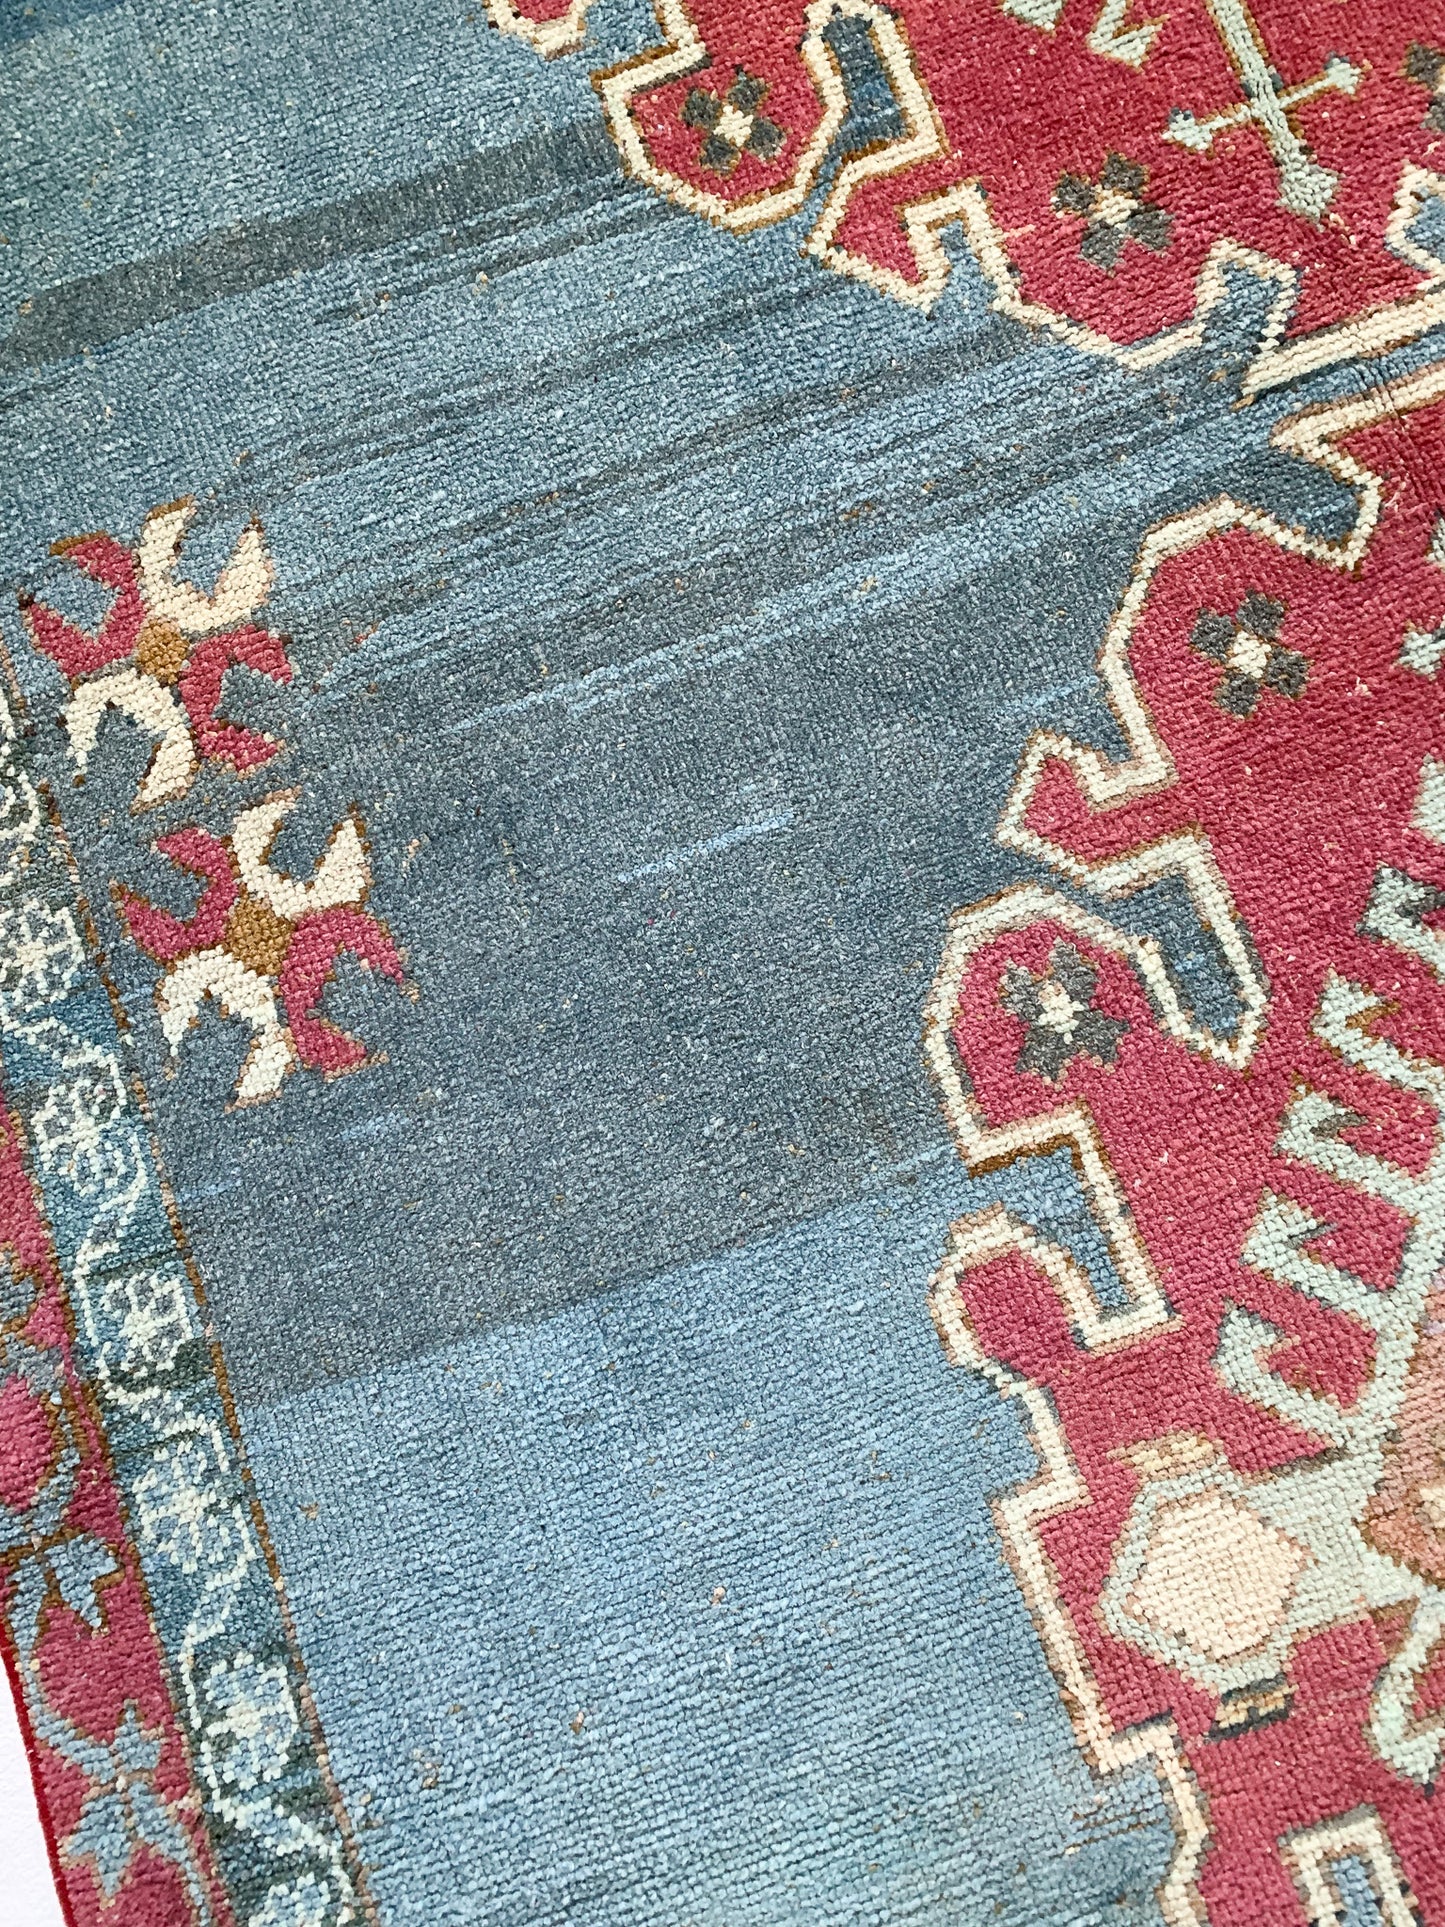 No. A1041 - 5.7' x 8.3' Vintage Turkish Area Rug